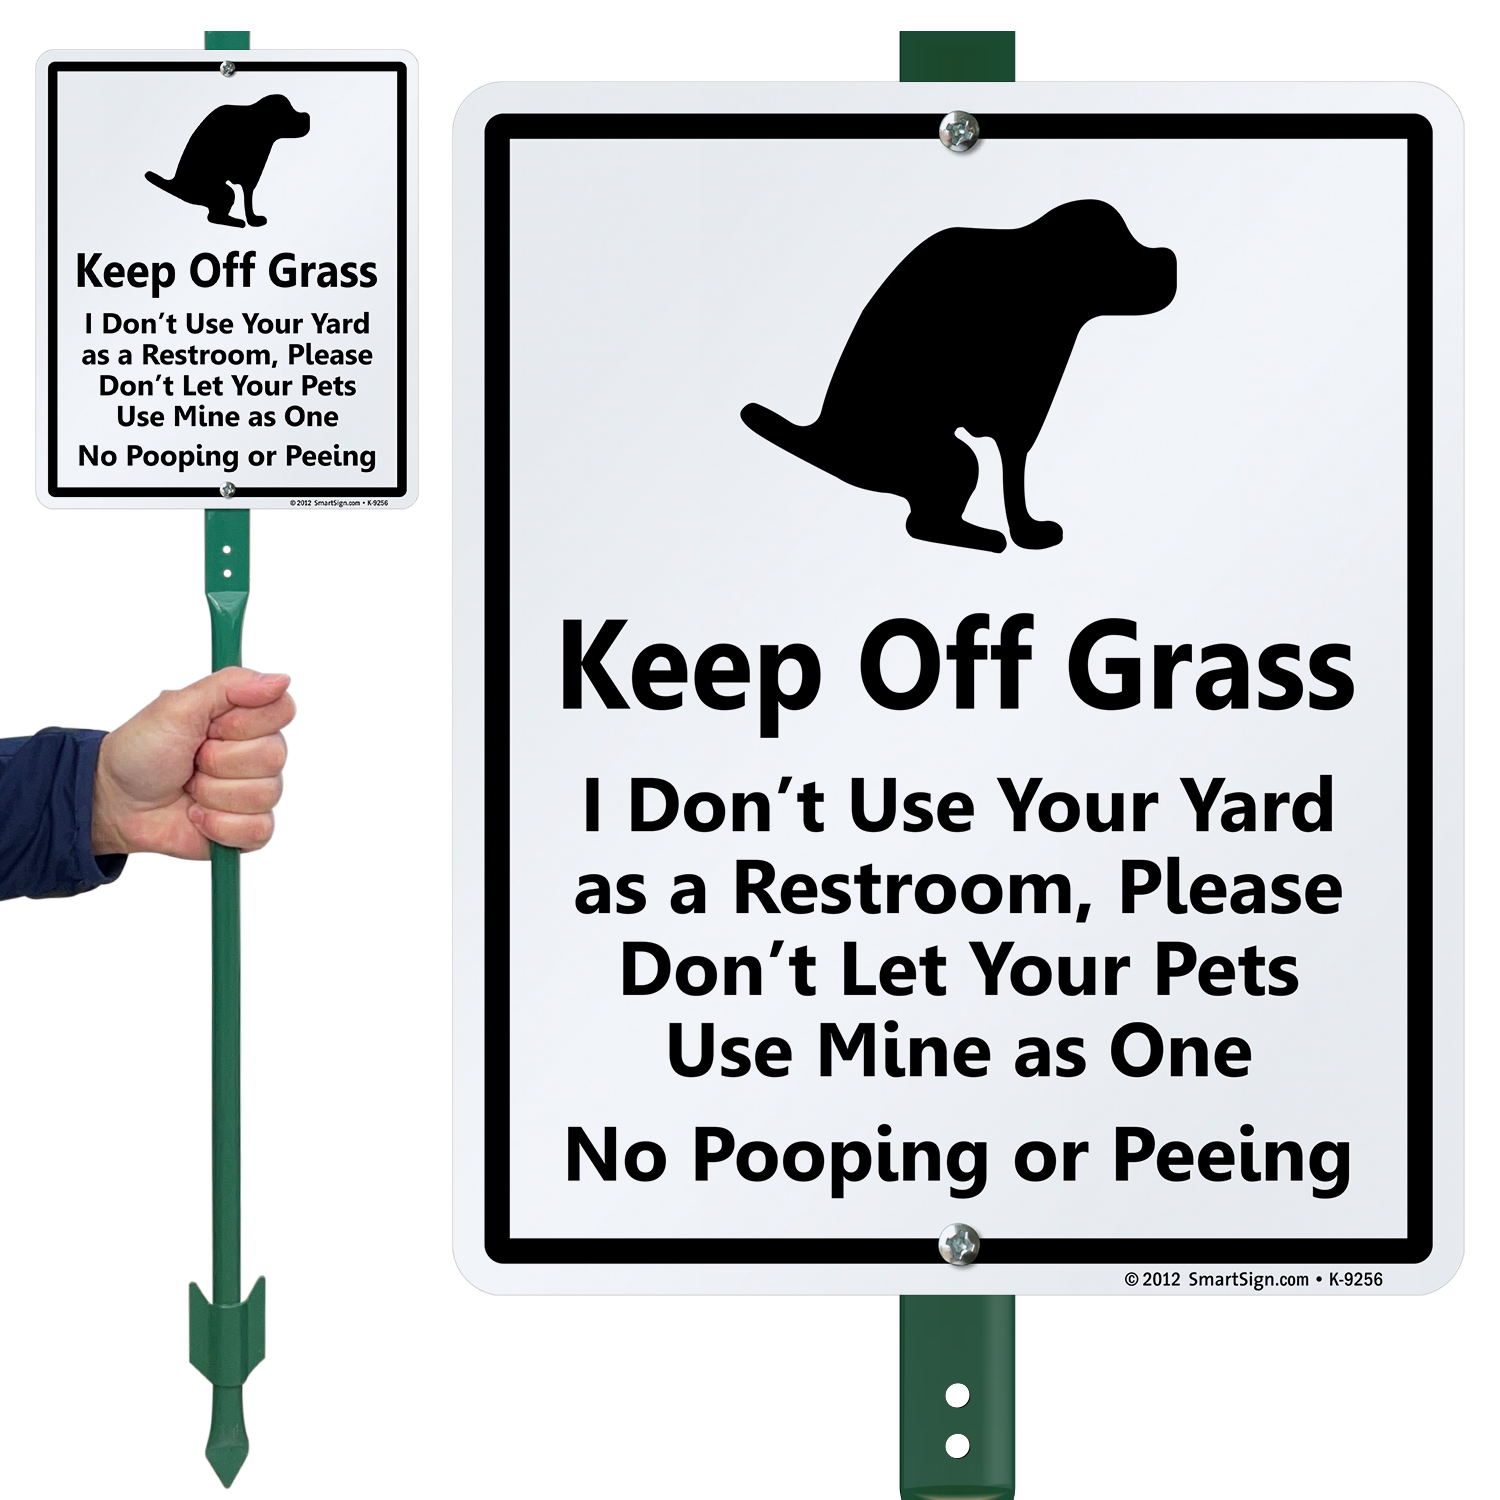 no dog poop allowed sign